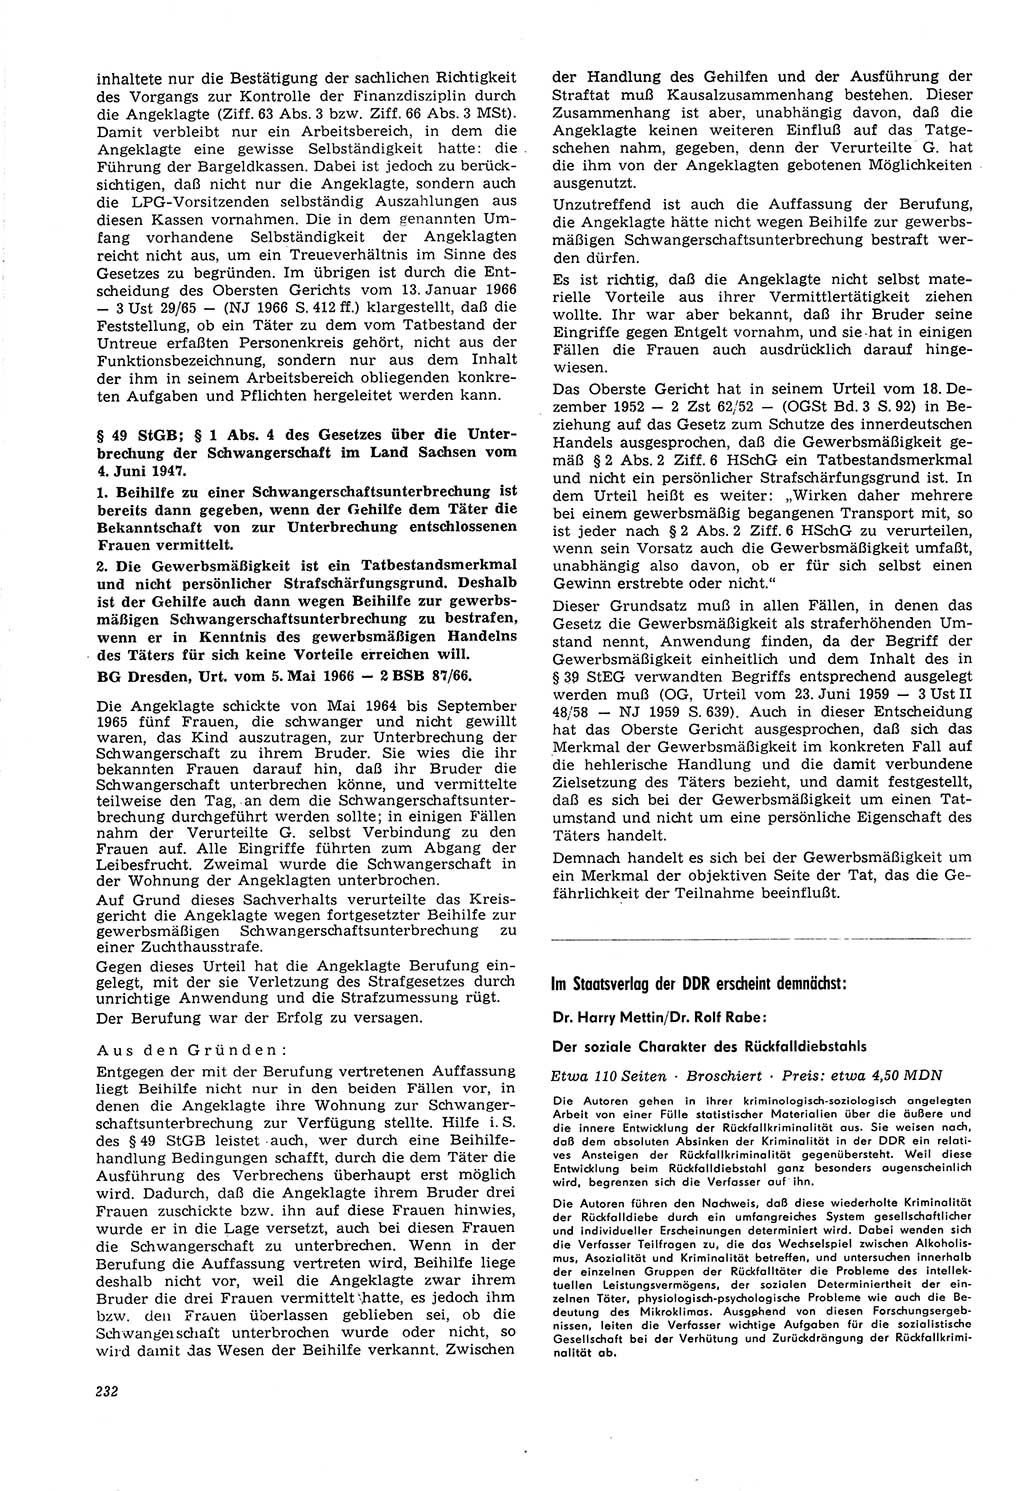 Neue Justiz (NJ), Zeitschrift für Recht und Rechtswissenschaft [Deutsche Demokratische Republik (DDR)], 21. Jahrgang 1967, Seite 232 (NJ DDR 1967, S. 232)